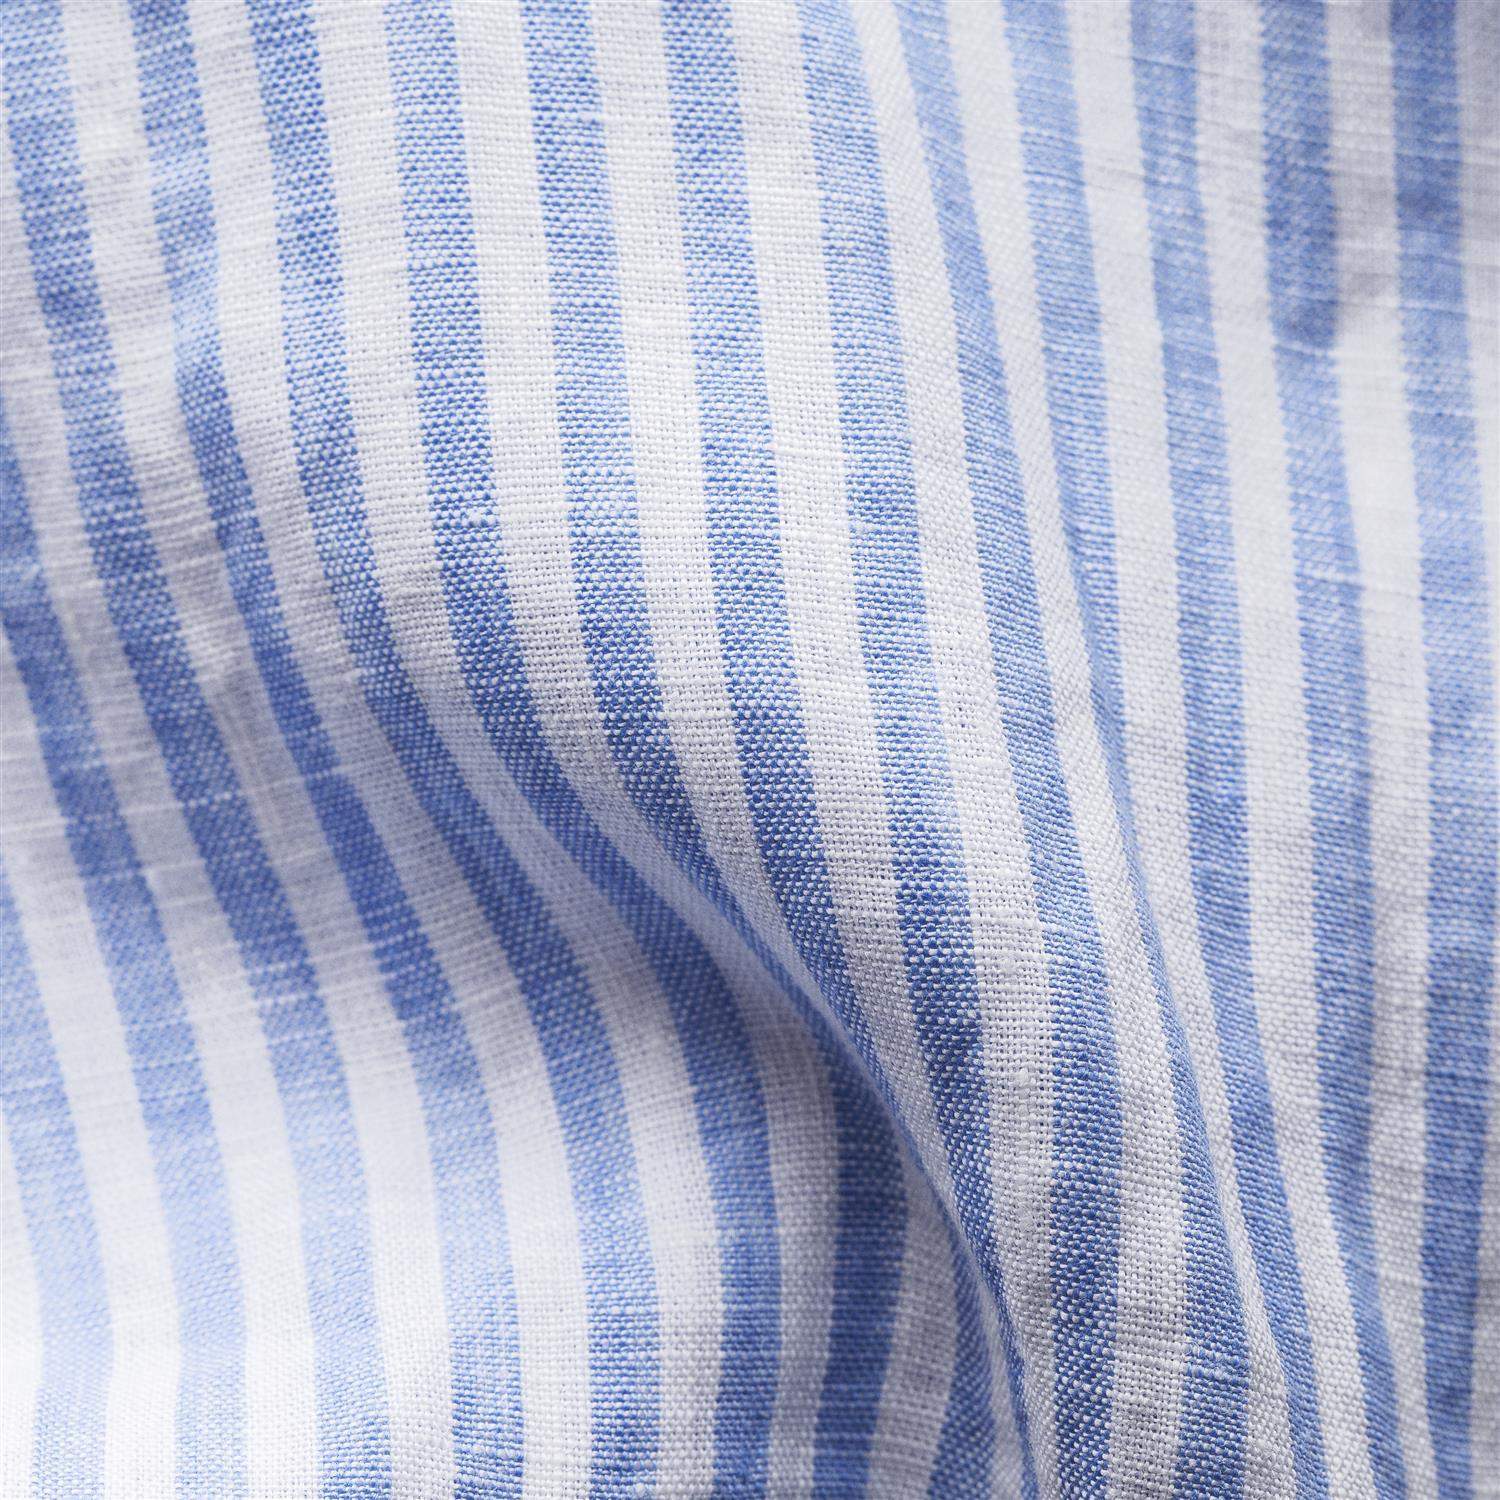 Contemporary Fit Skjorte Blå Striper-Eton-100003032-Product.Number,2102,5661220-ProductId,Eton,Herre,Skjorter,Striper